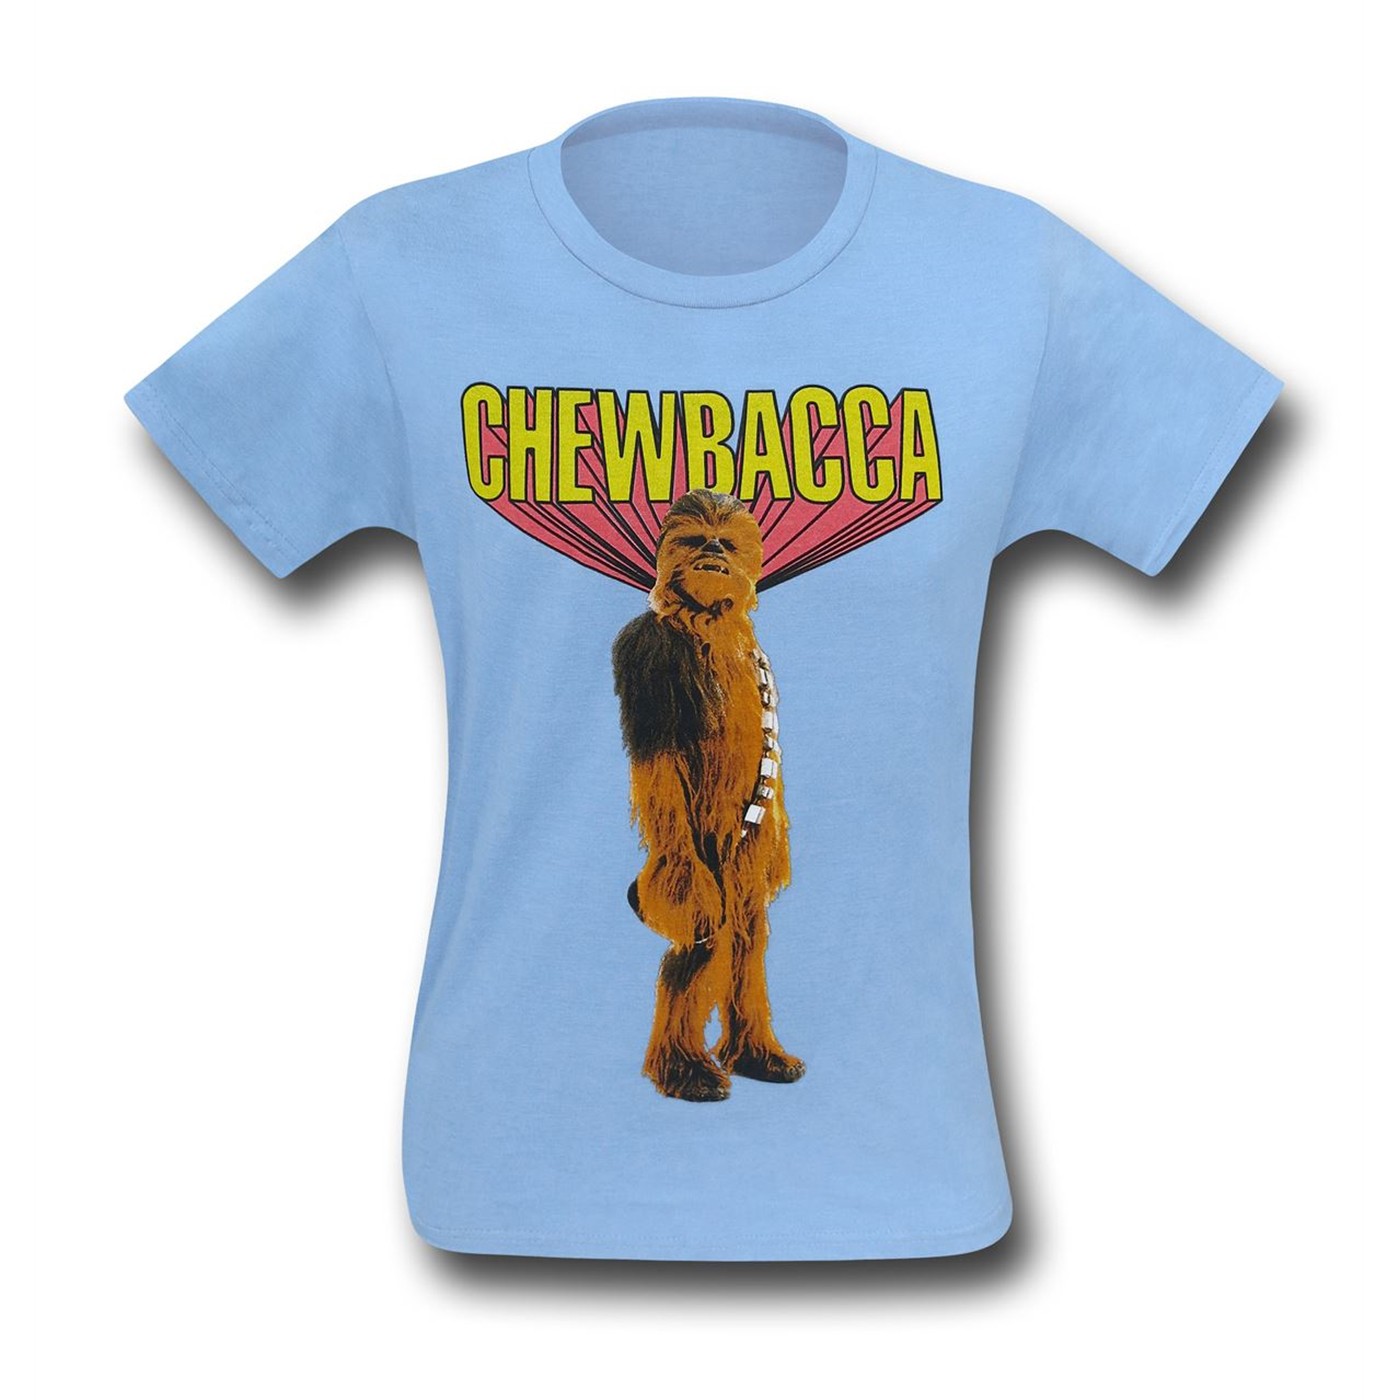 Star Wars Retro Chewbacca T-Shirt